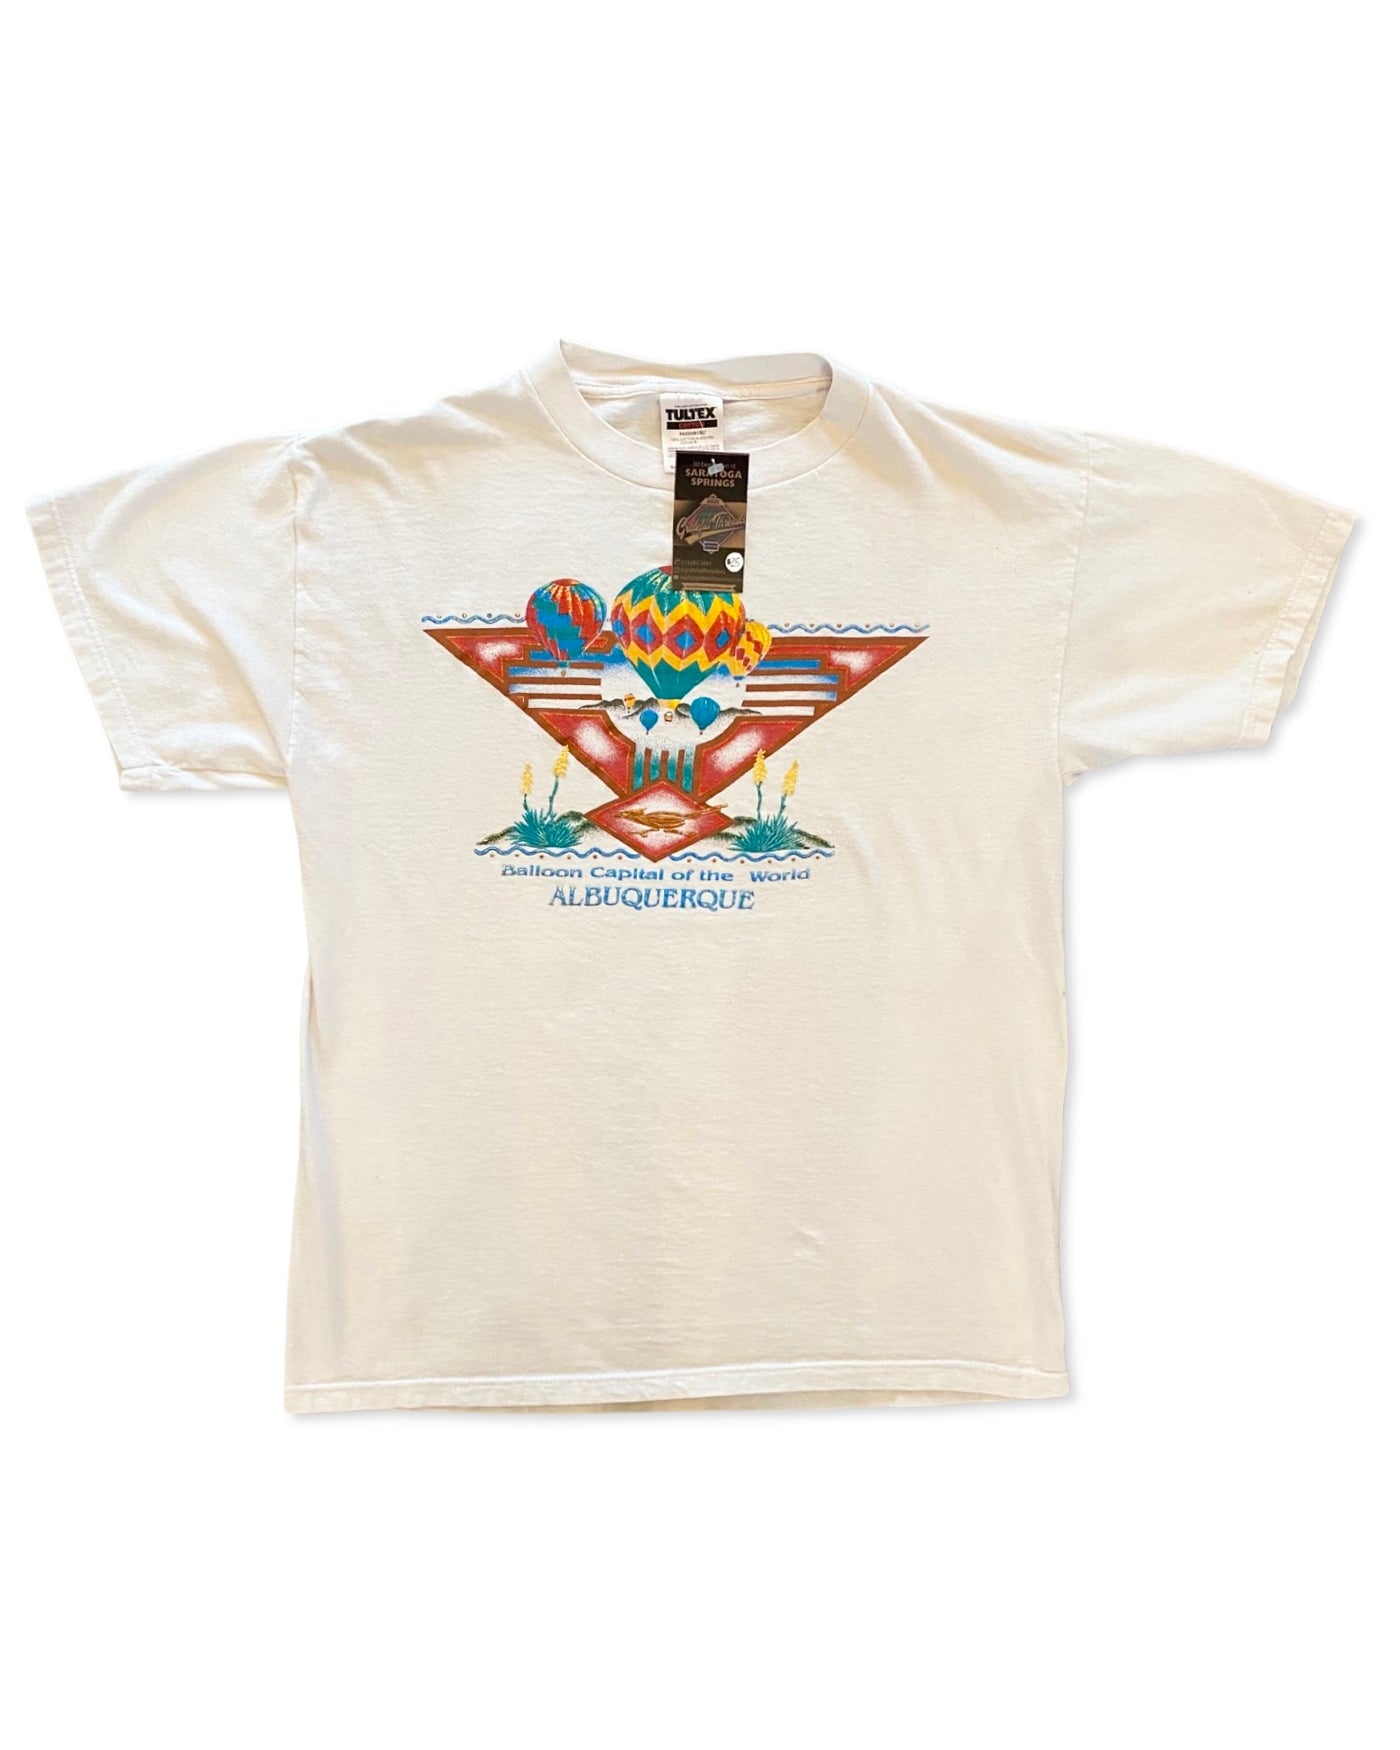 Vintage 90s Albuquerque Balloon Festival T-Shirt